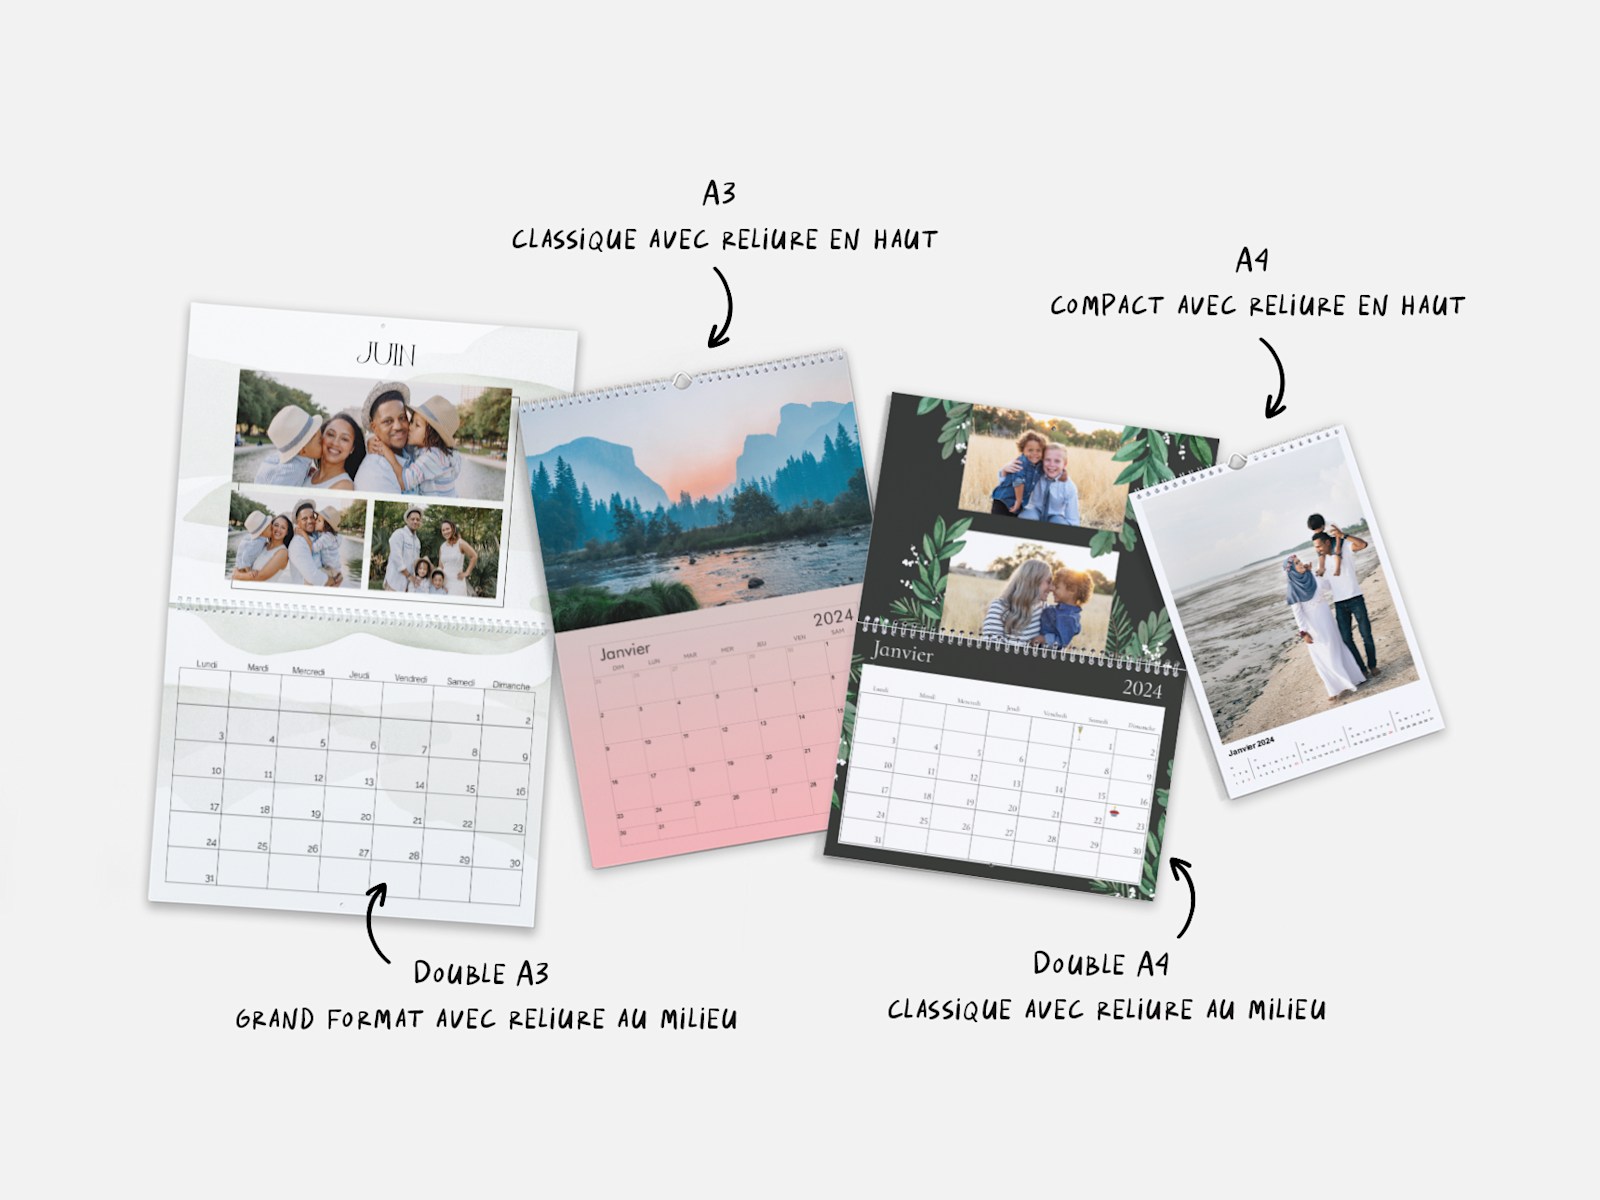 Acheter Best of Mini Calendar 2024 ? Rapide et facile en ligne 